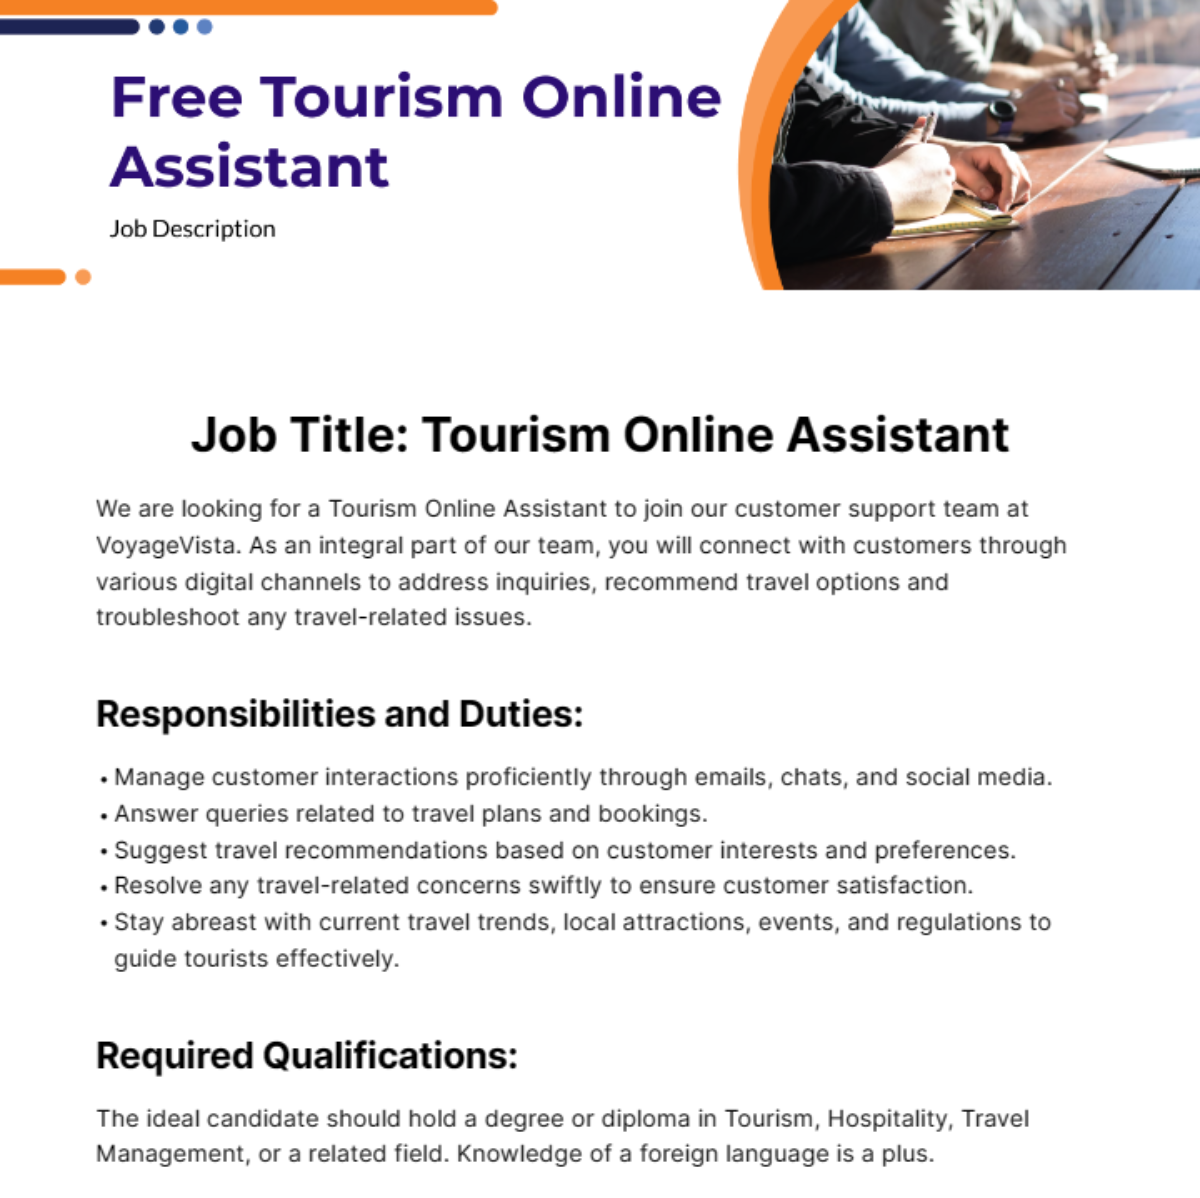 Free Tourism Online Assistant Job Description Template